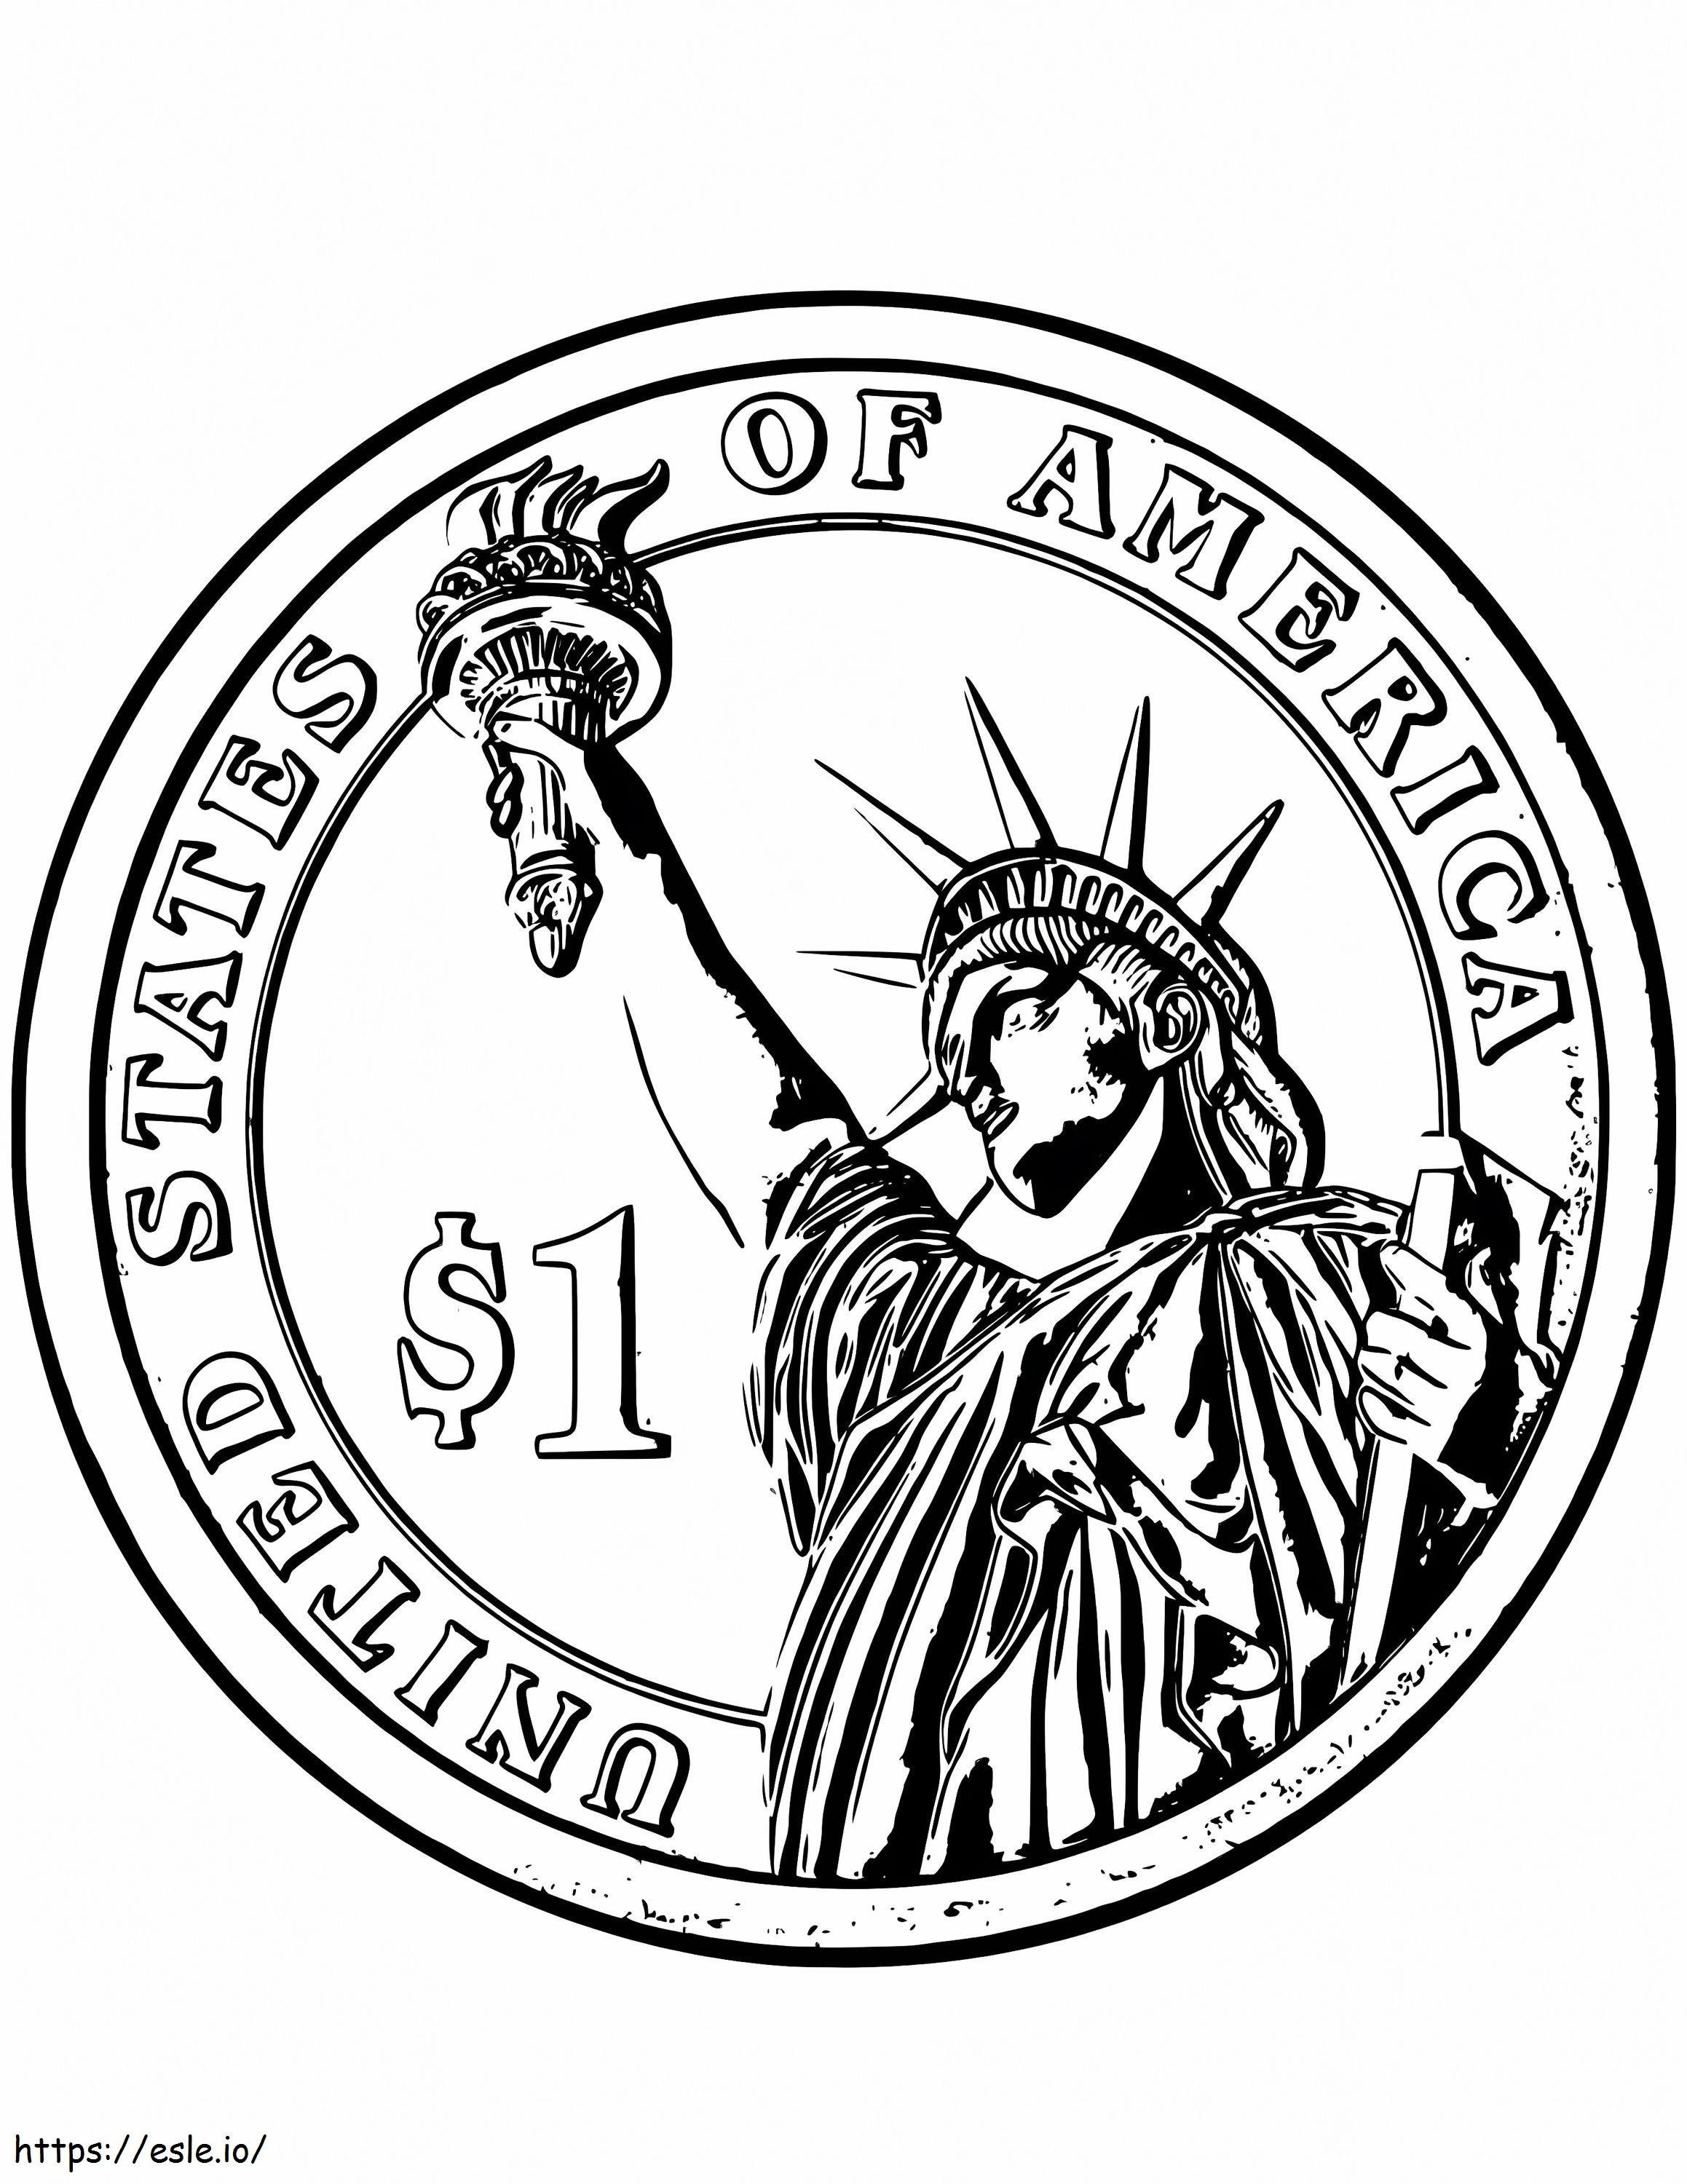 Moneta jednodolarowa ze Statuą Wolności kolorowanka